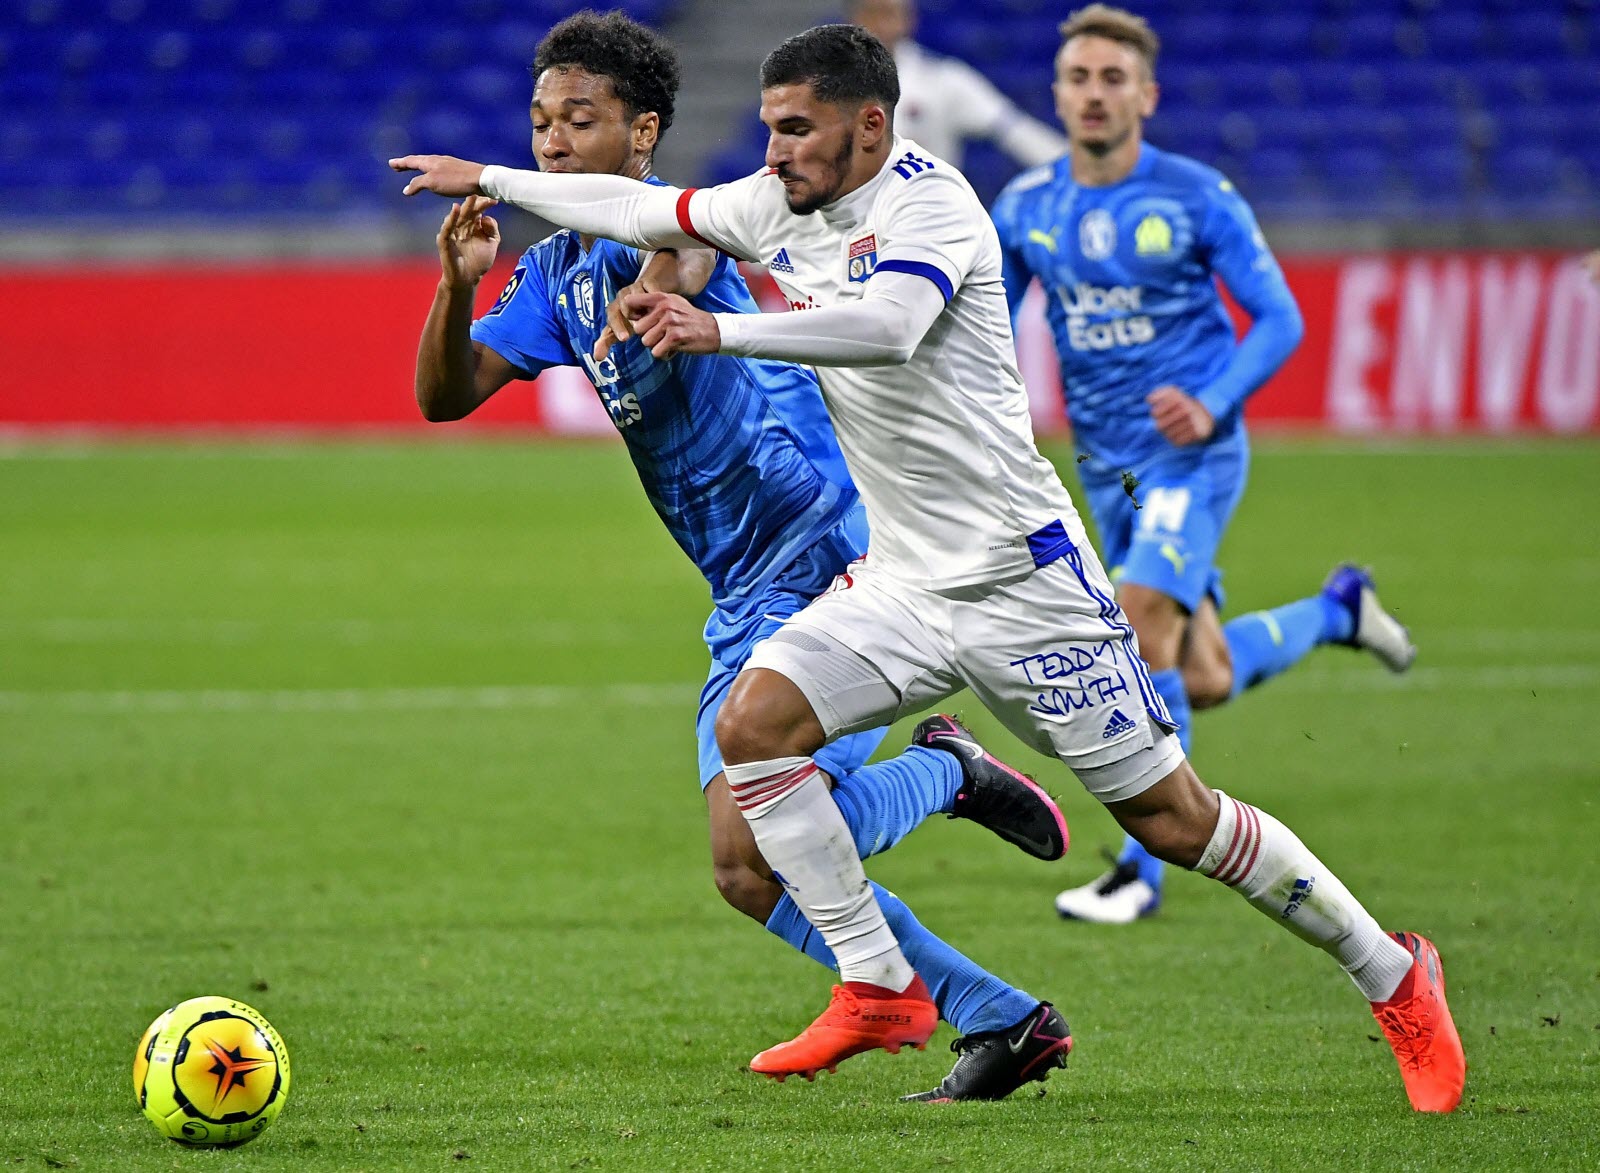 Lyon – Marseille, les compos officielles du choc avec Shaqiri, Under, Payet titulaires